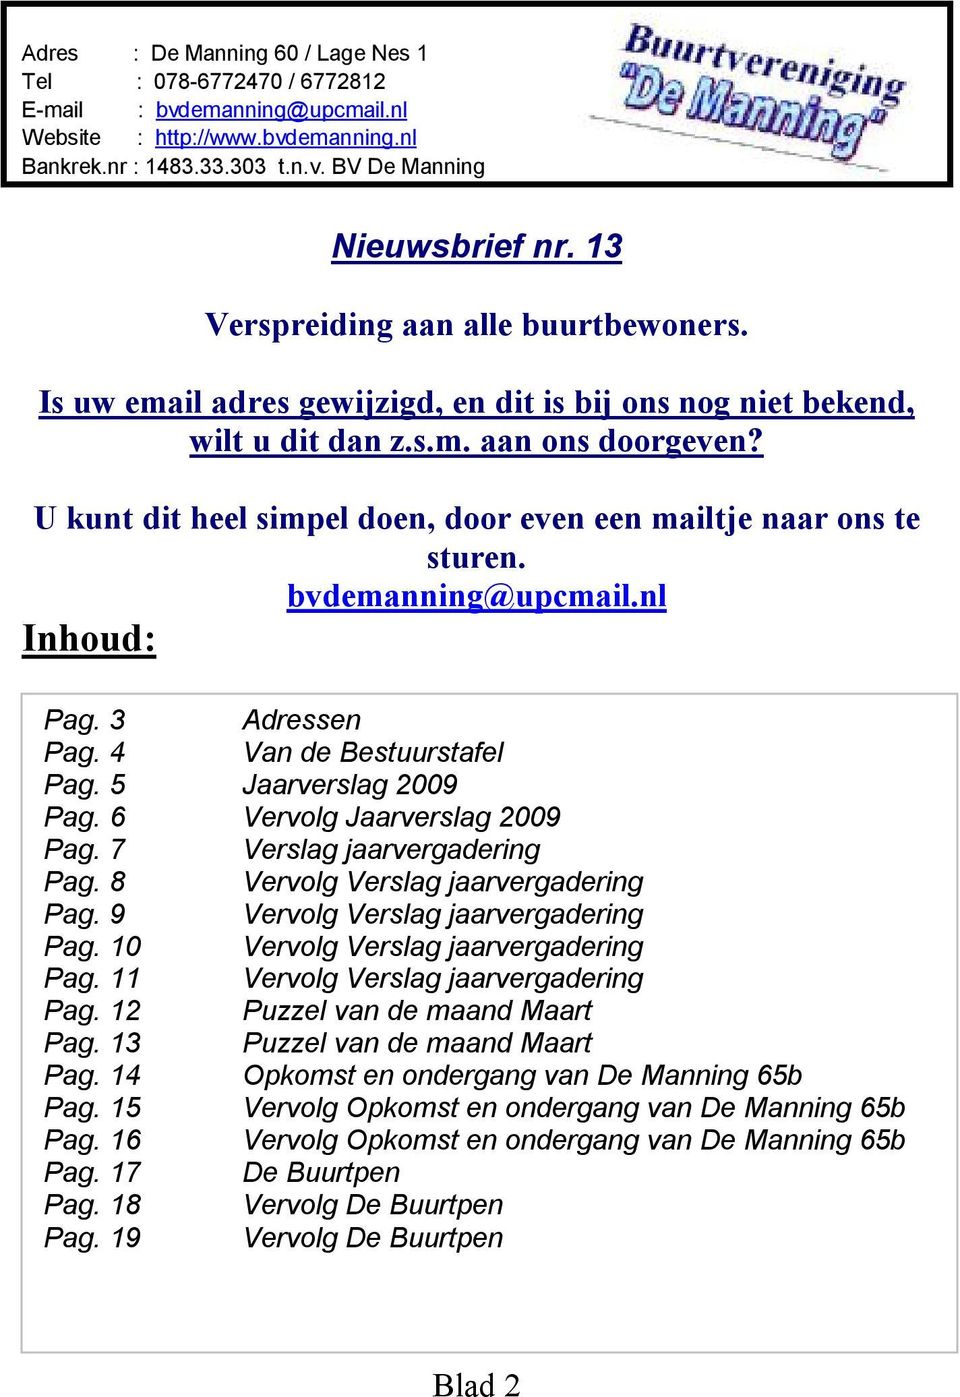 U kunt dit heel simpel doen, door even een mailtje naar ons te sturen. bvdemanning@upcmail.nl Inhoud: Pag. 3 Adressen Pag. 4 Van de Bestuurstafel Pag. 5 Jaarverslag 2009 Pag.